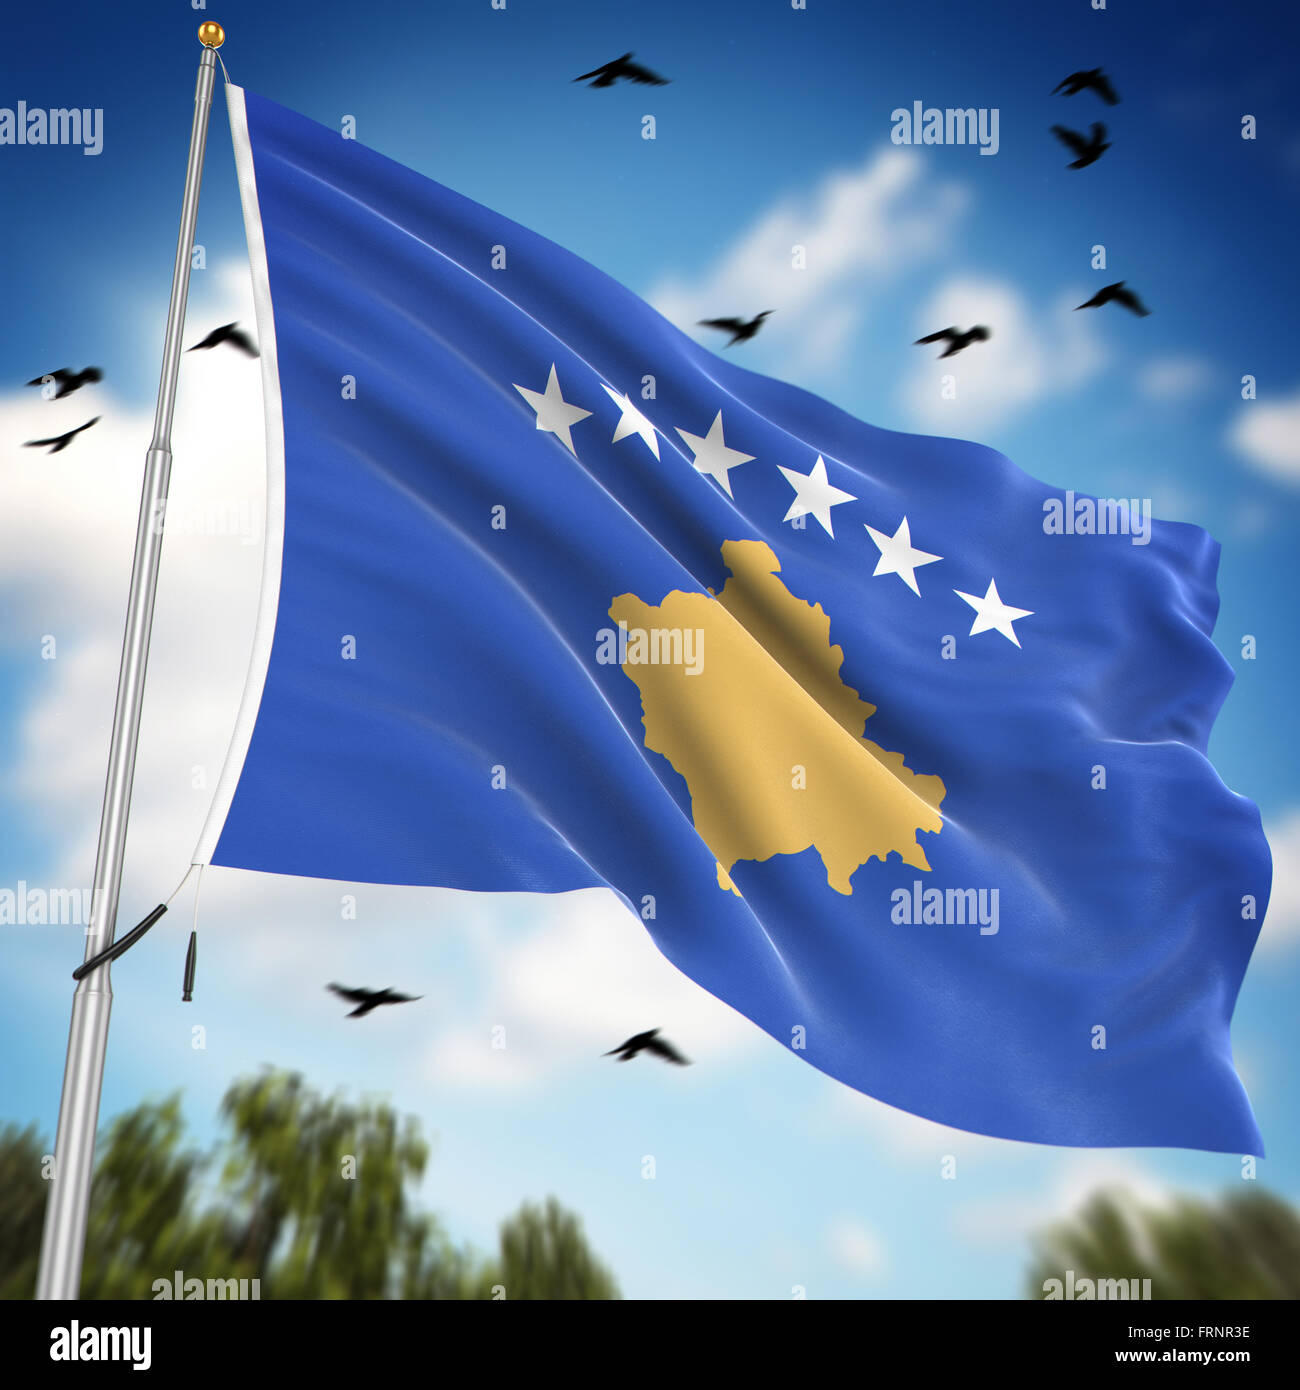 Premium Photo  National flag of kosovo background with flag of kosovo